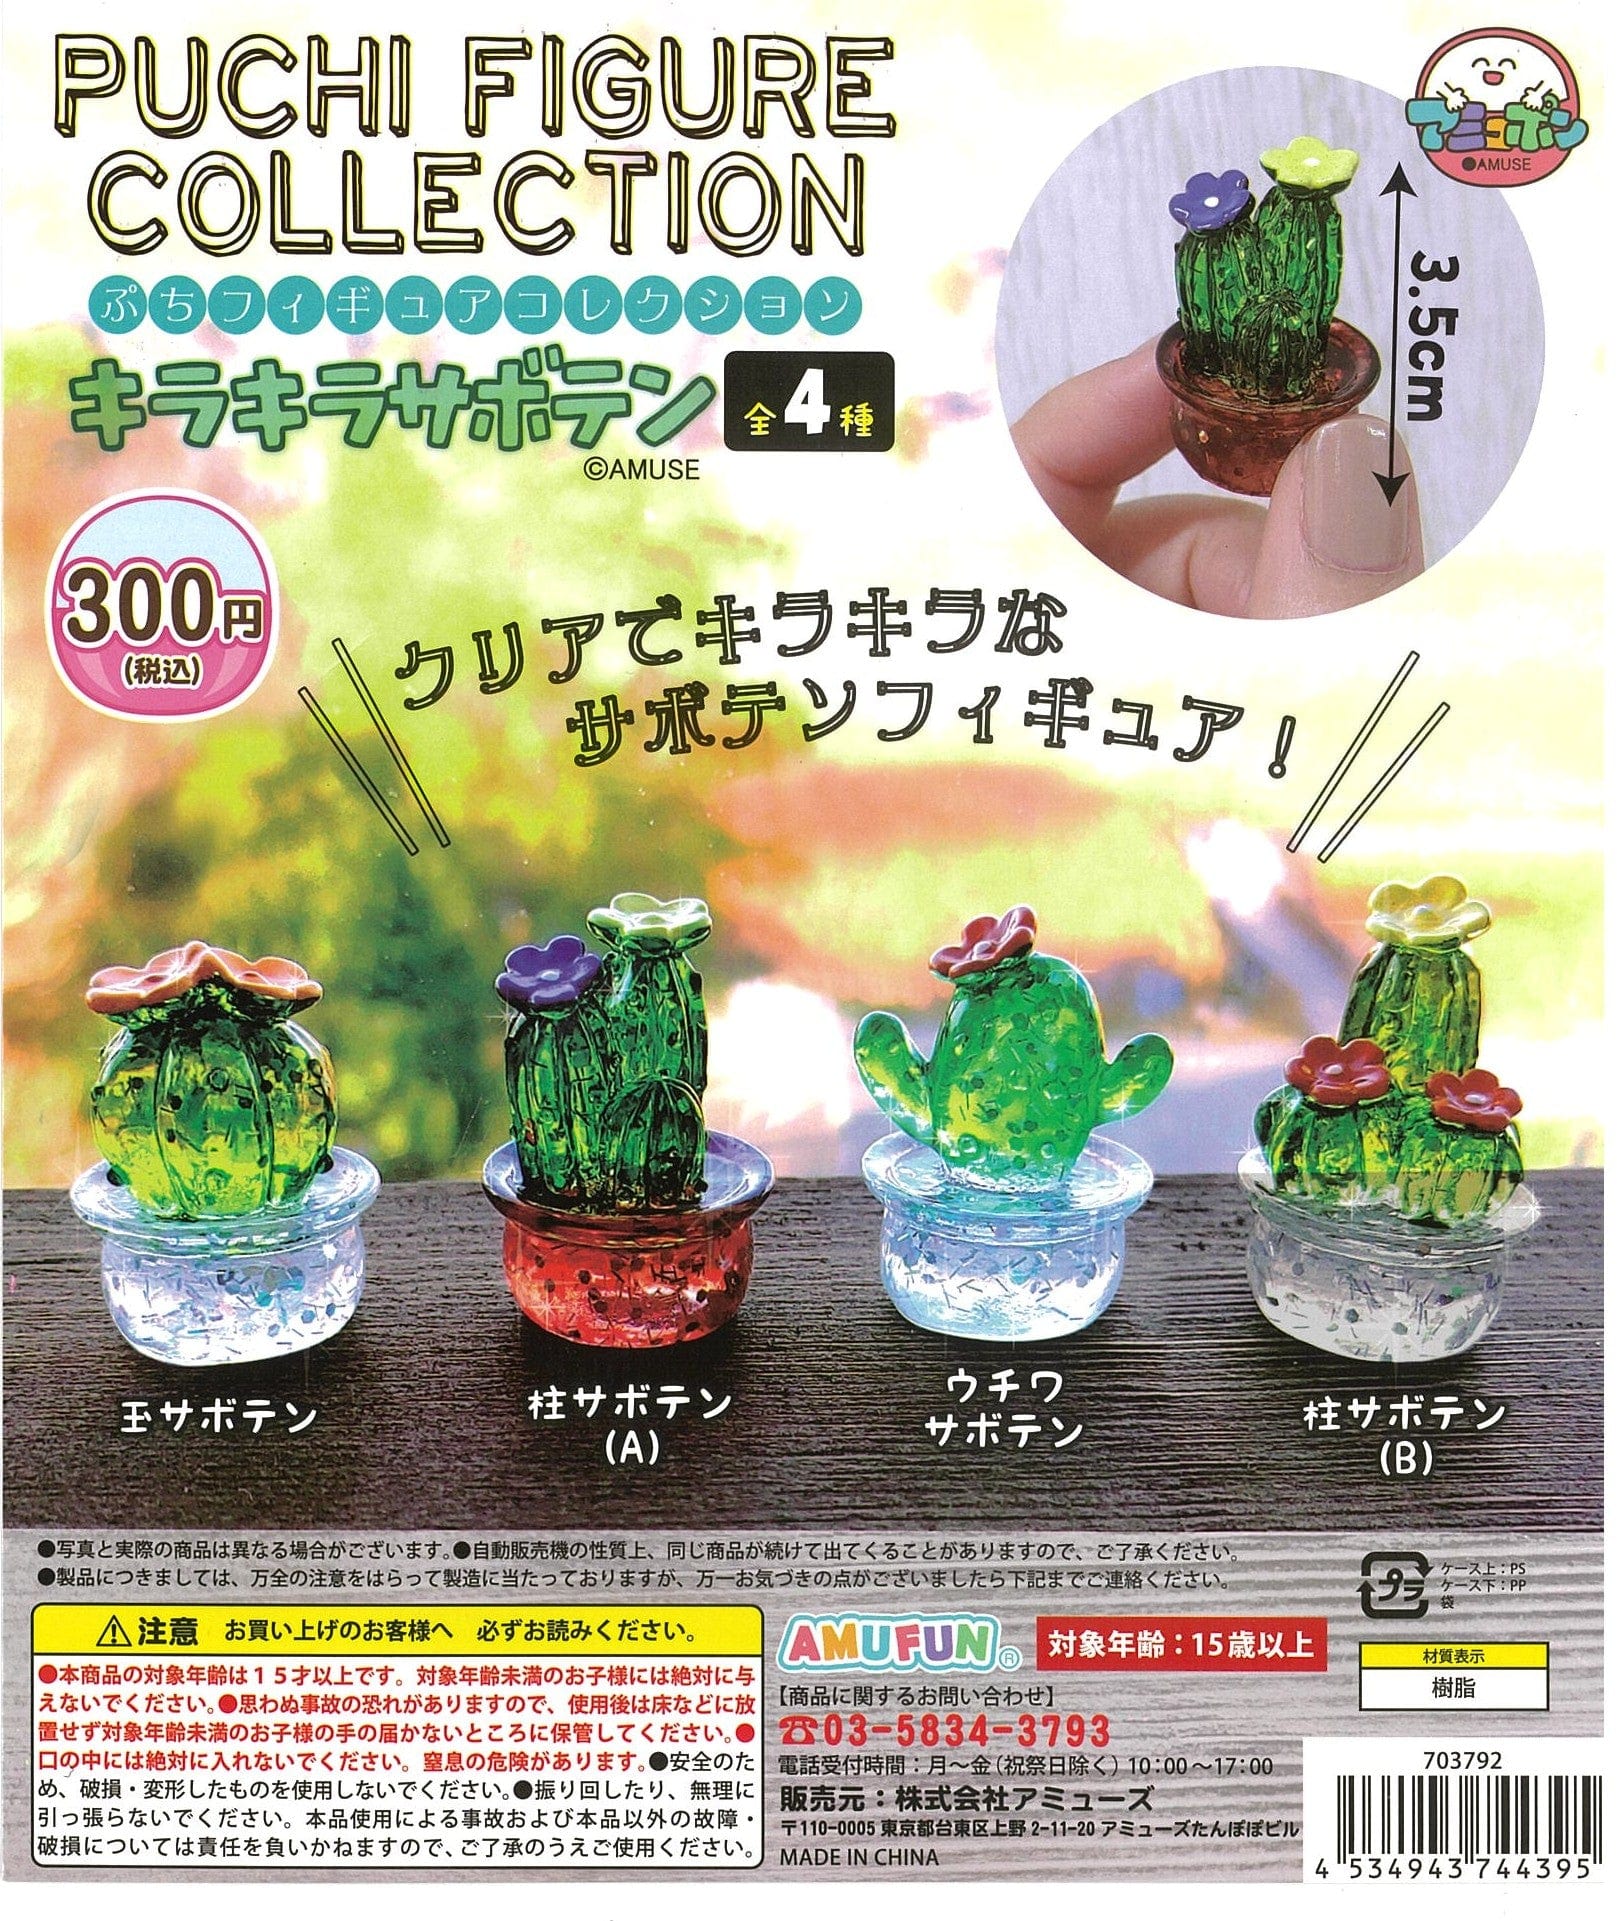 AMUFUN CP2430 Petit Figure Collection Kirakira Cactus